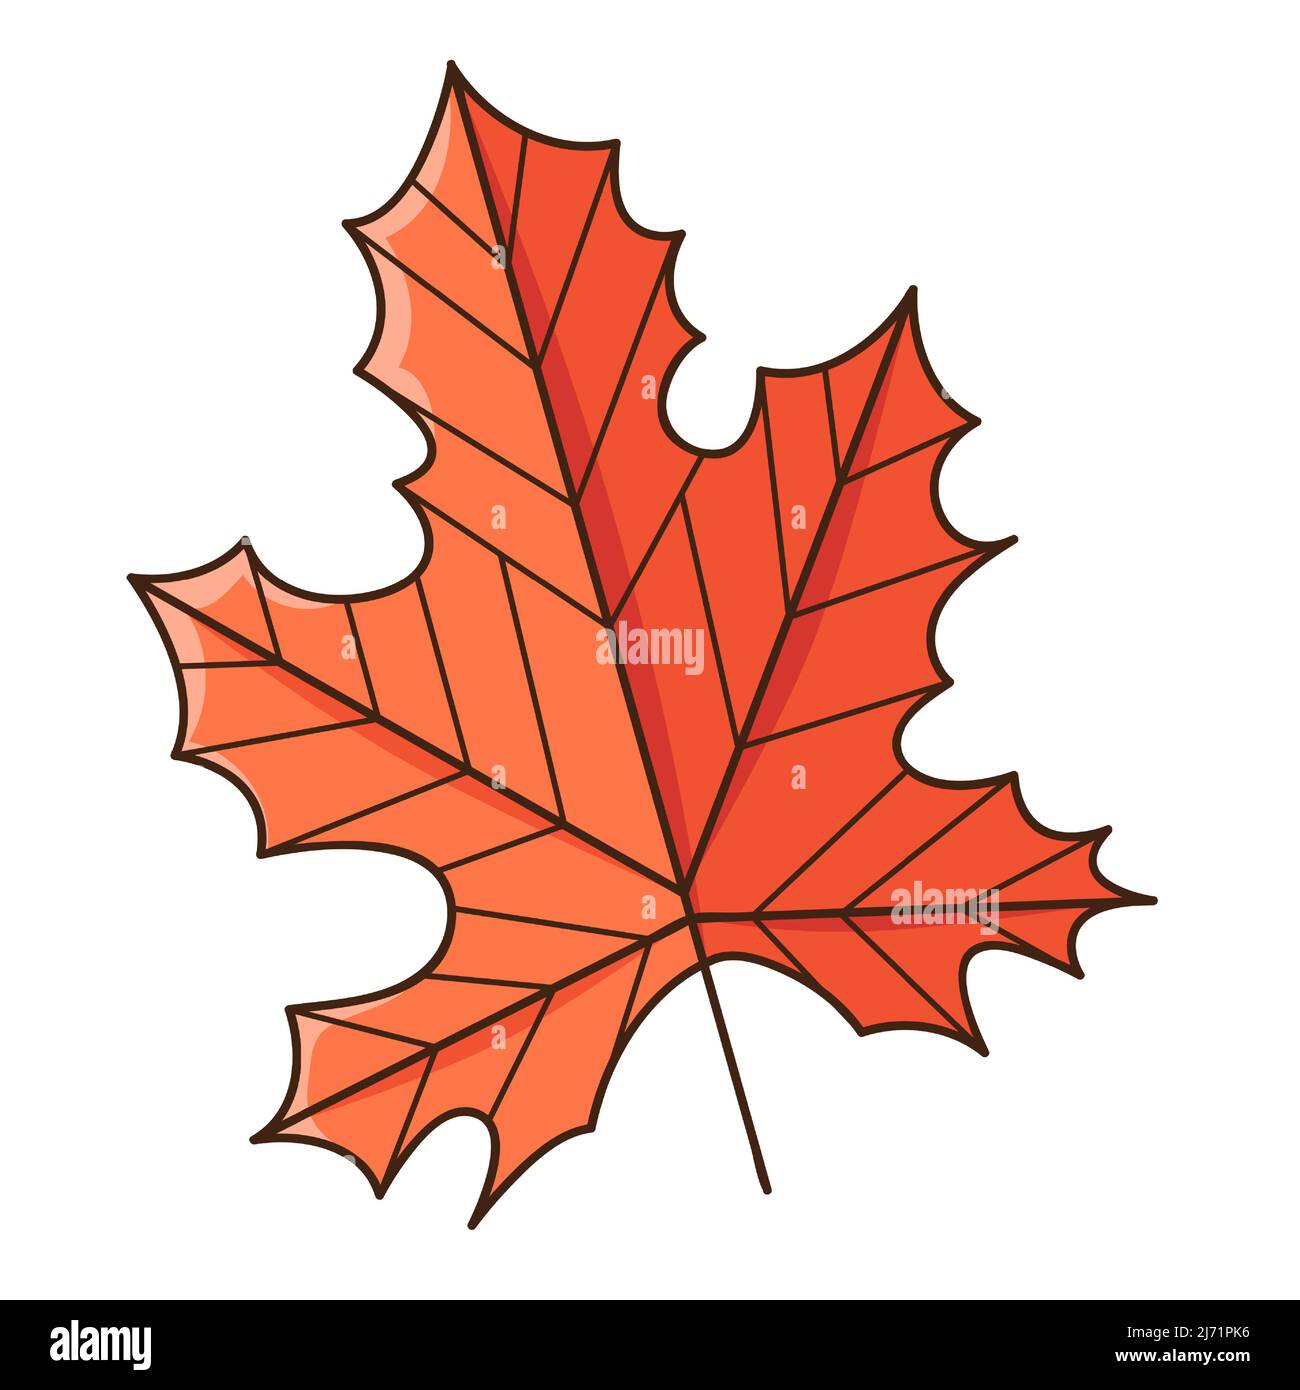 Foglia d'acero rosso autunno. Botanica, elemento di disegno vegetale con contorno. Ora di autunno. Doodle, disegnato a mano. Design piatto. Illustrazione vettoriale a colori. Isolato Illustrazione Vettoriale